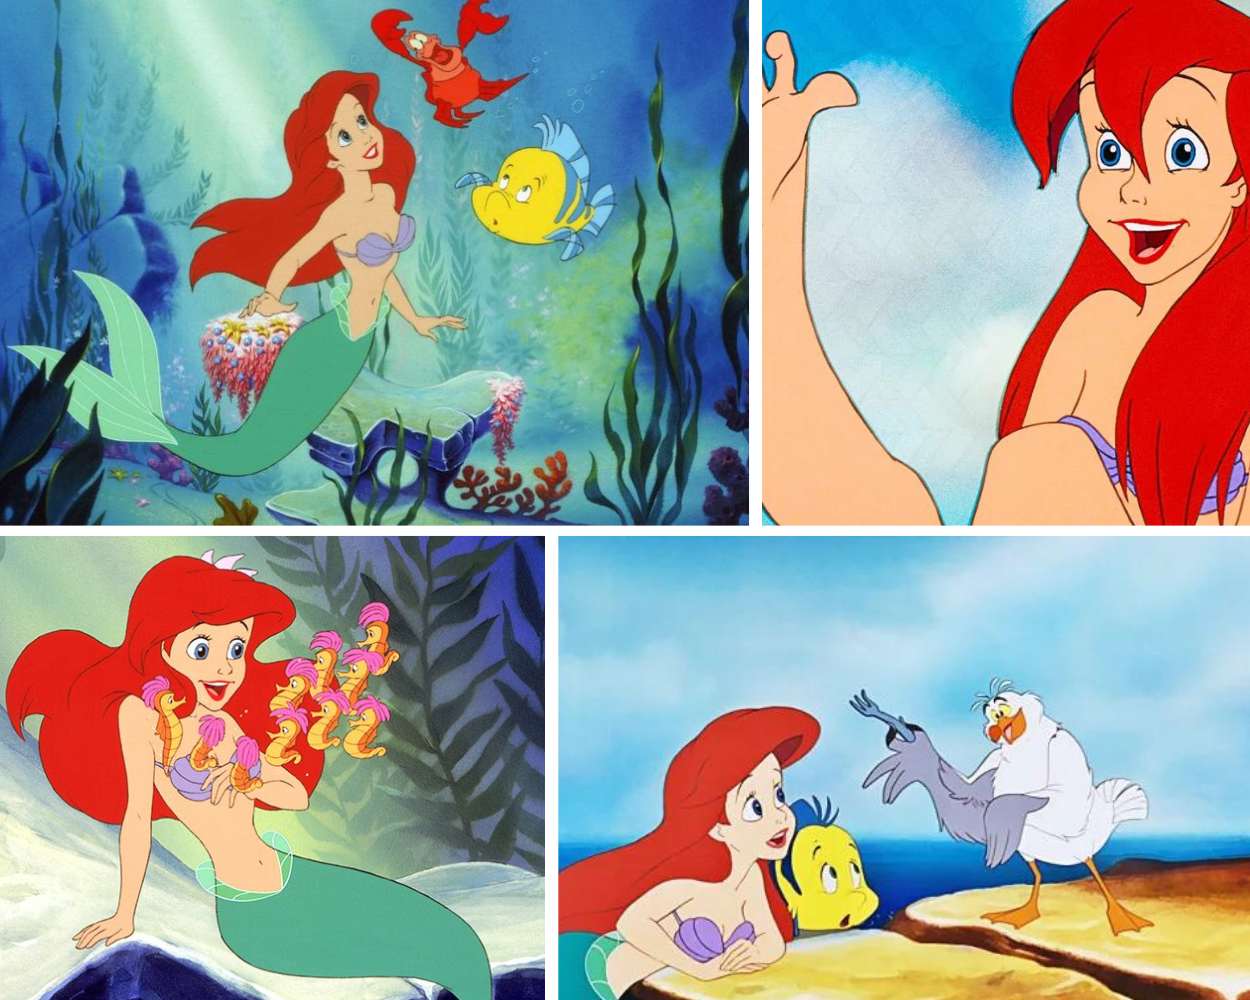 The Little Mermaid - A Sad Disney Movie